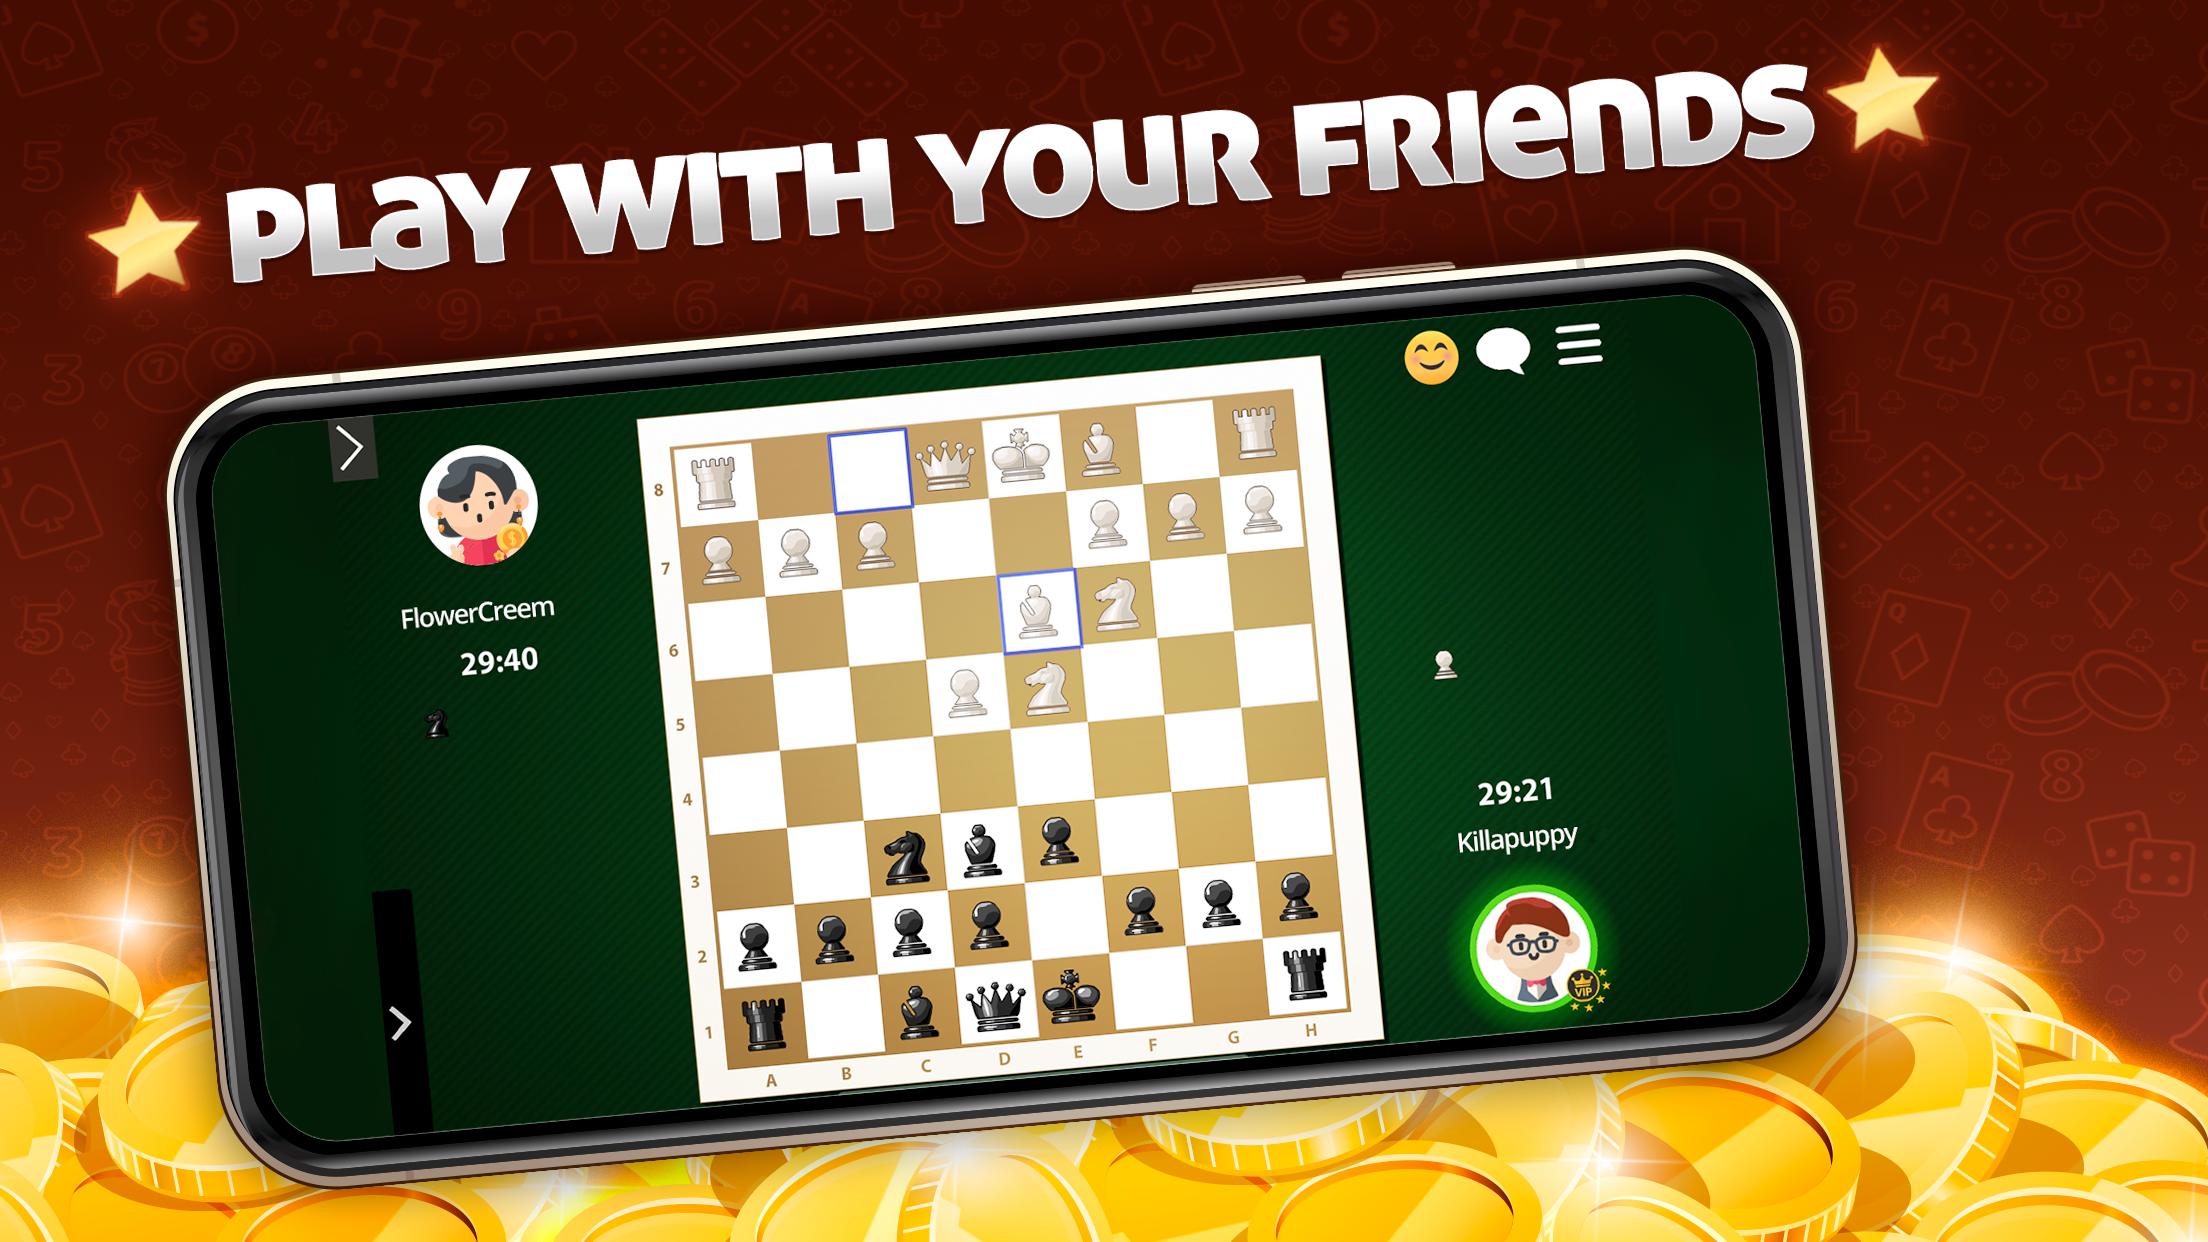 Jogue xadrez online grátis no computador ou aplicativo no celular